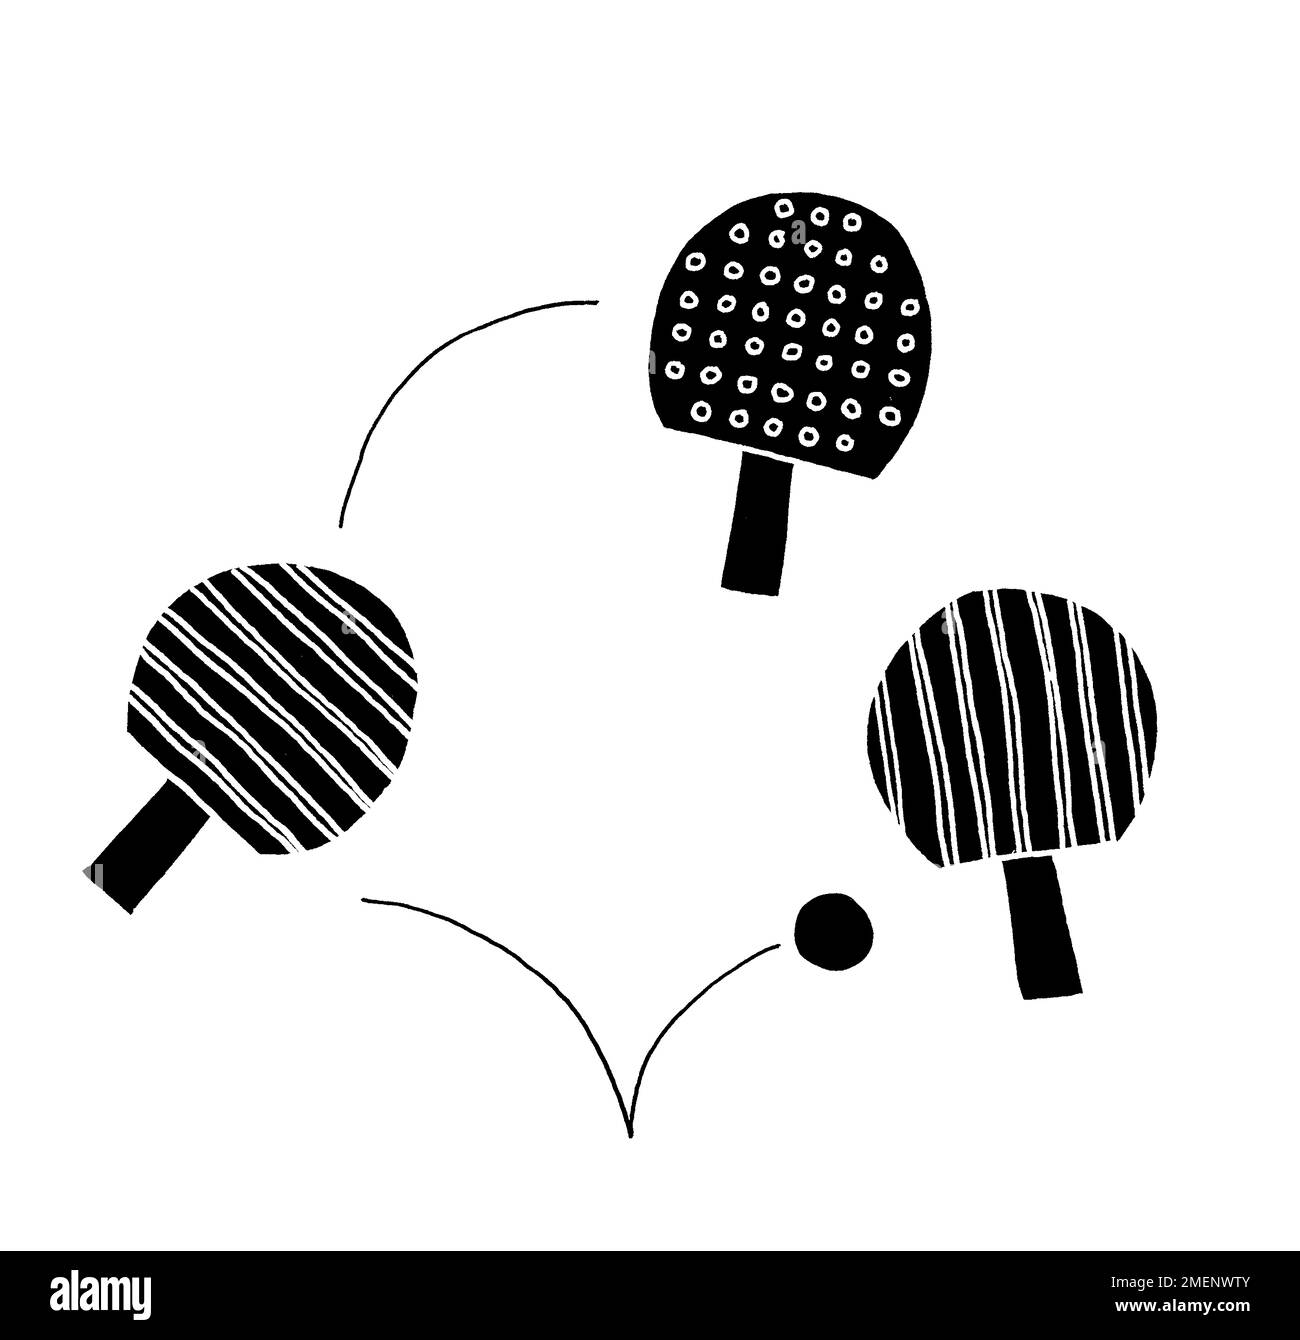 Illustration en noir et blanc des raquets de tennis de table et d'une balle qui rebondit entre eux Banque D'Images